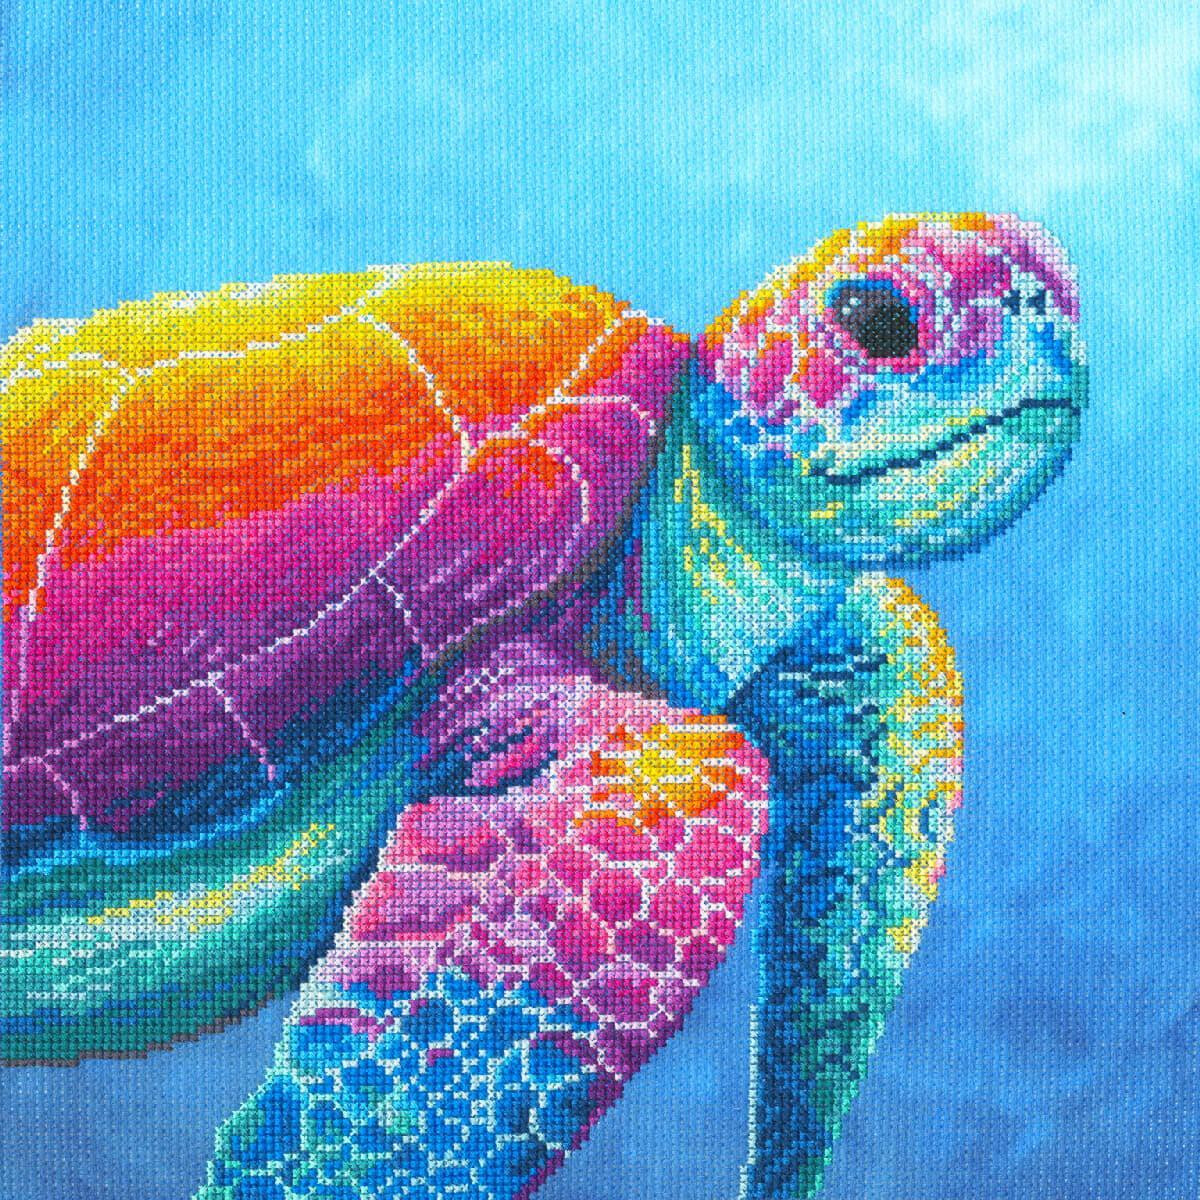 Eine lebendige Illustration einer Meeresschildkröte...